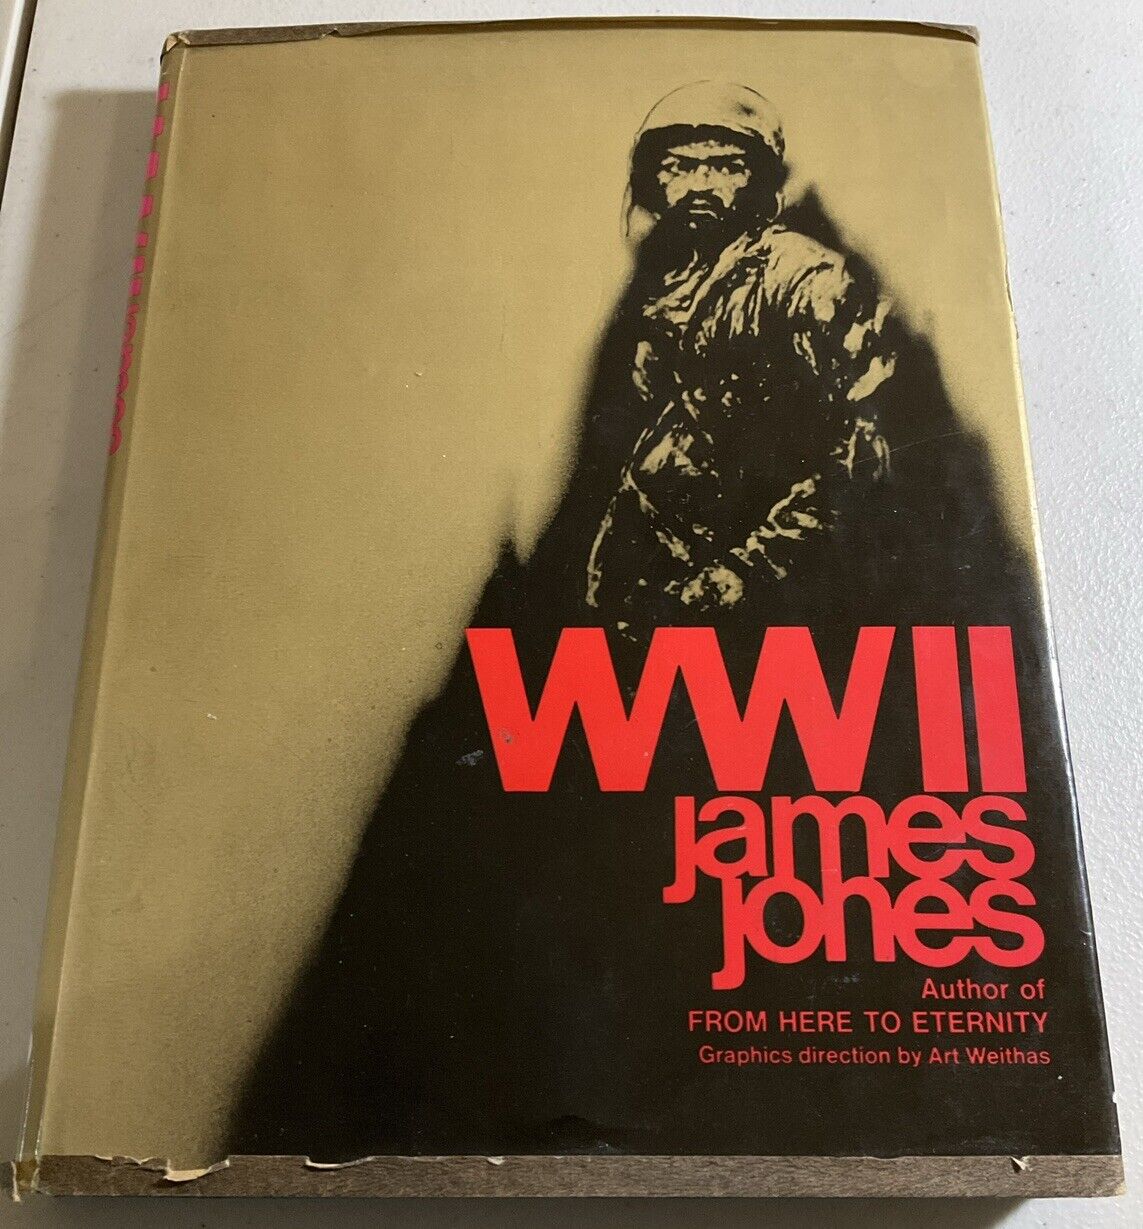 WWII James Jones 1975 Art Weithas First Ballantine Books Edition Oct 1976 - HC